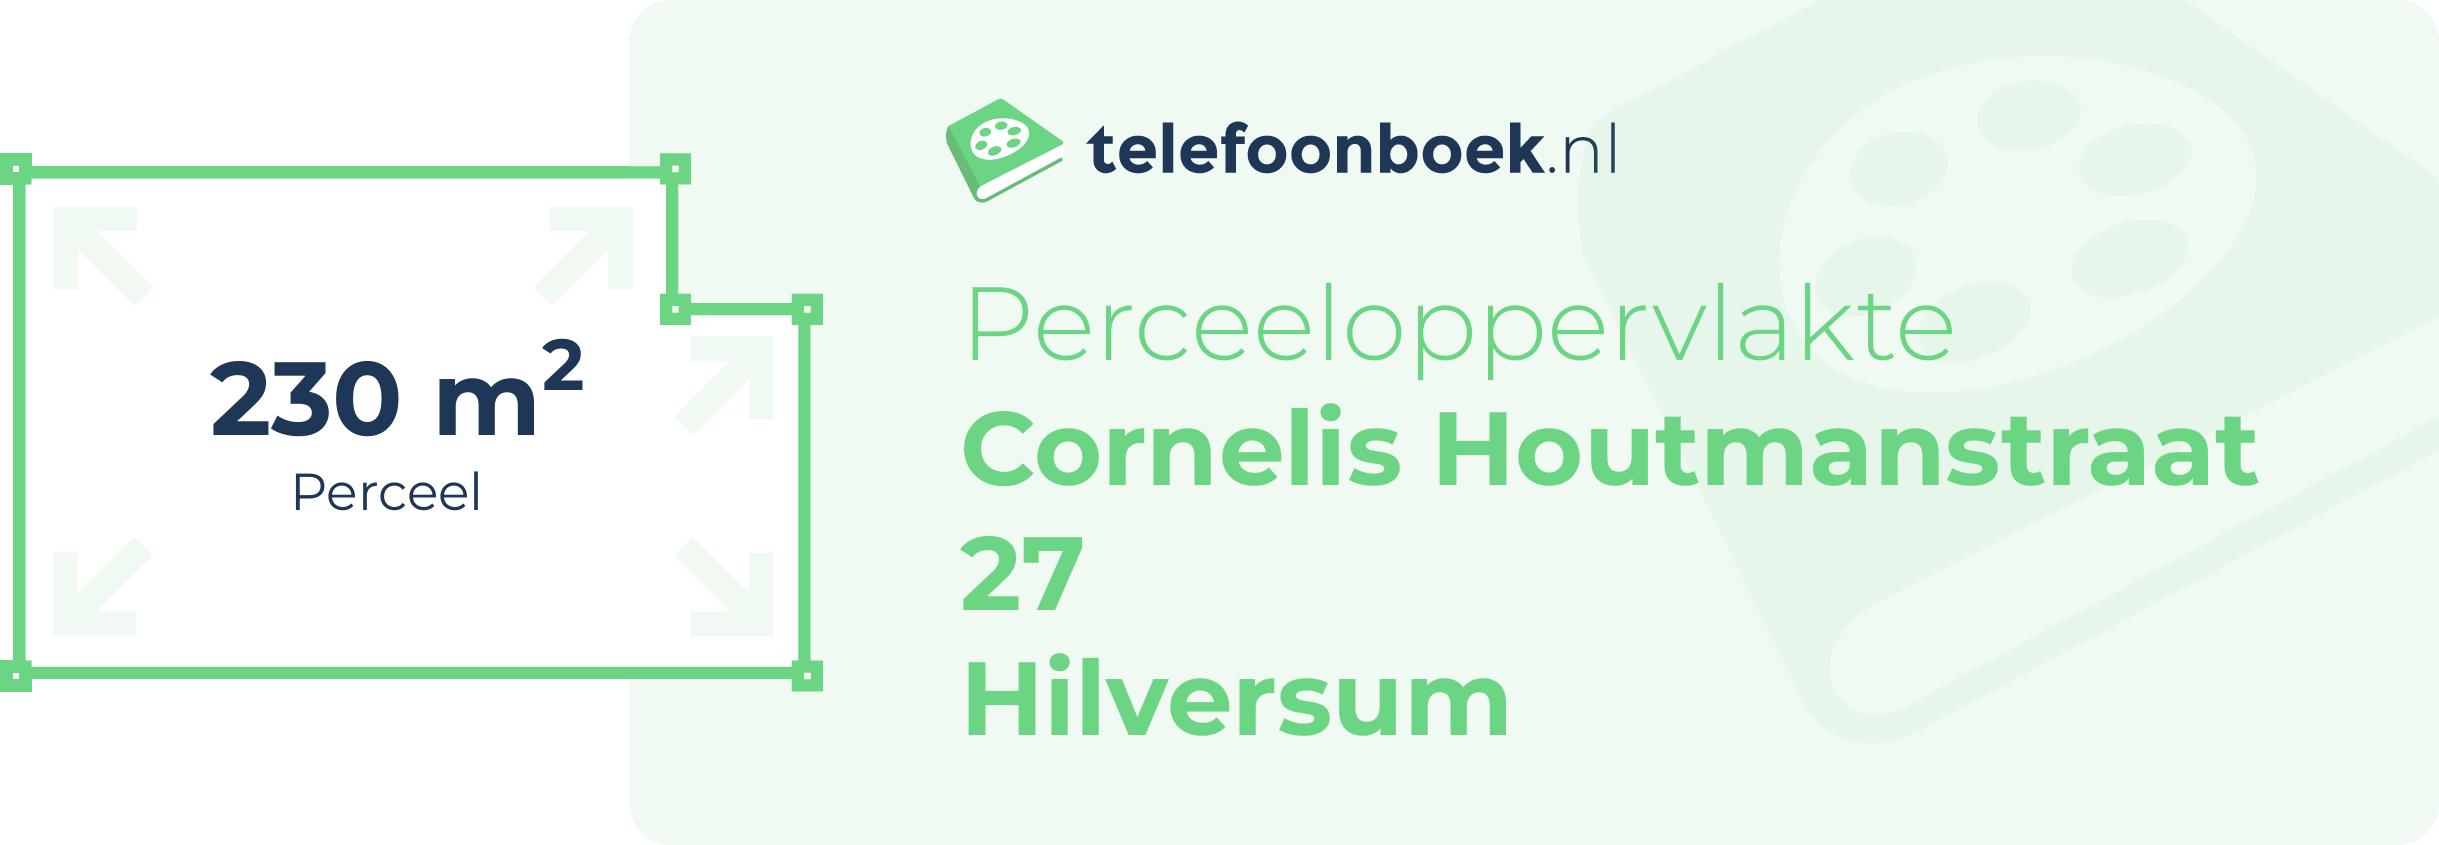 Perceeloppervlakte Cornelis Houtmanstraat 27 Hilversum